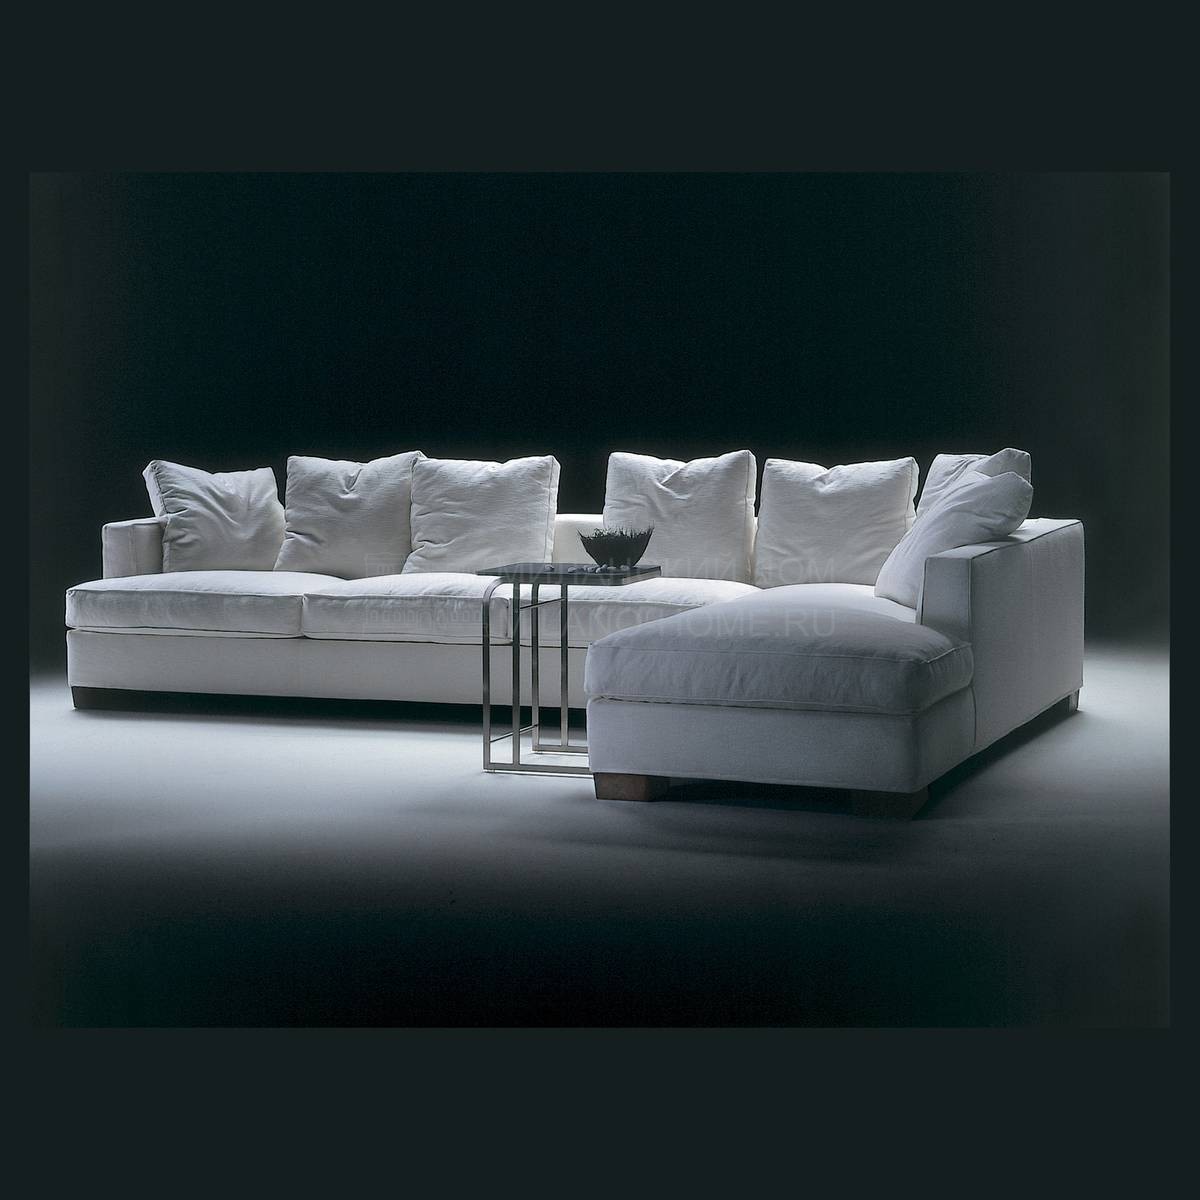 Модульный диван Eros 2 /sofa из Италии фабрики FLEXFORM